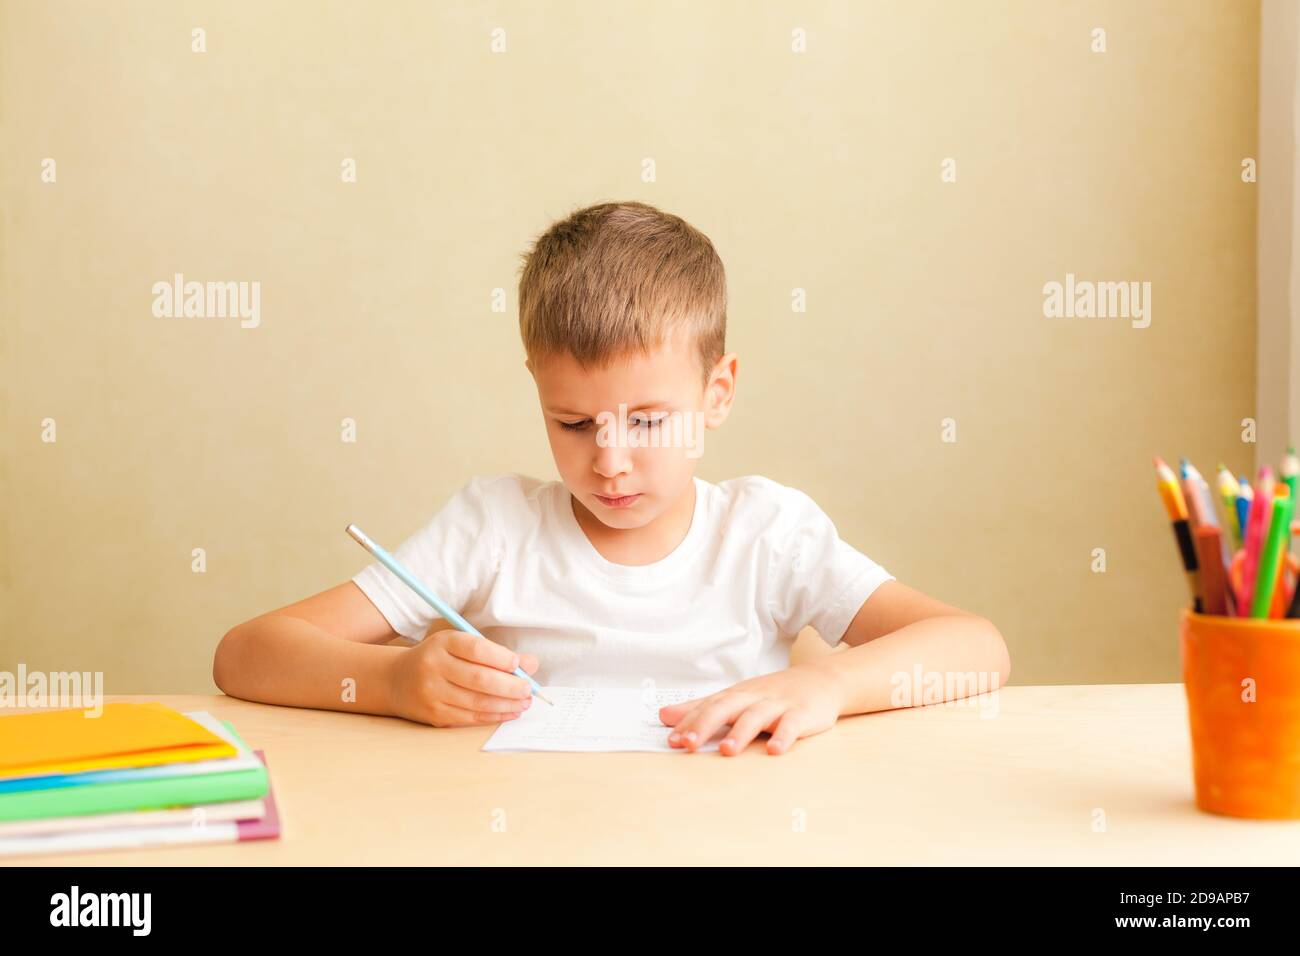 Kopf erschossen Nahaufnahme Porträt von niedlichen kleinen Schüler zu Hause lernen. 7 Jahre alter Junge macht Unterricht am Schreibtisch in seinem Zimmer. Stockfoto